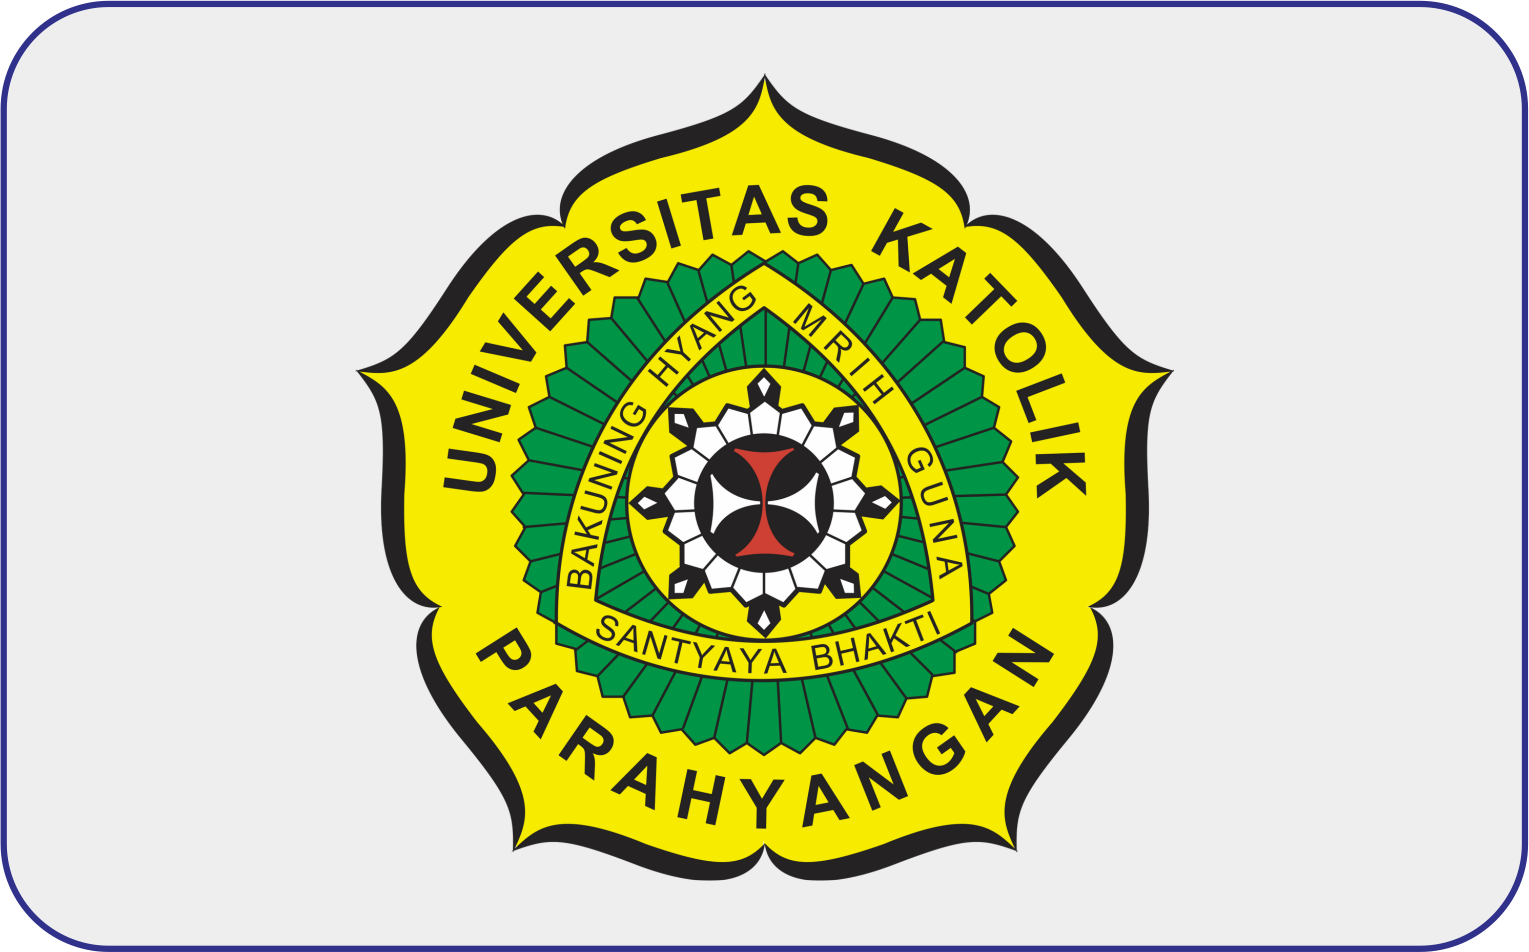 Universitas Katolik Parahyangan Bandung (UNPAR)